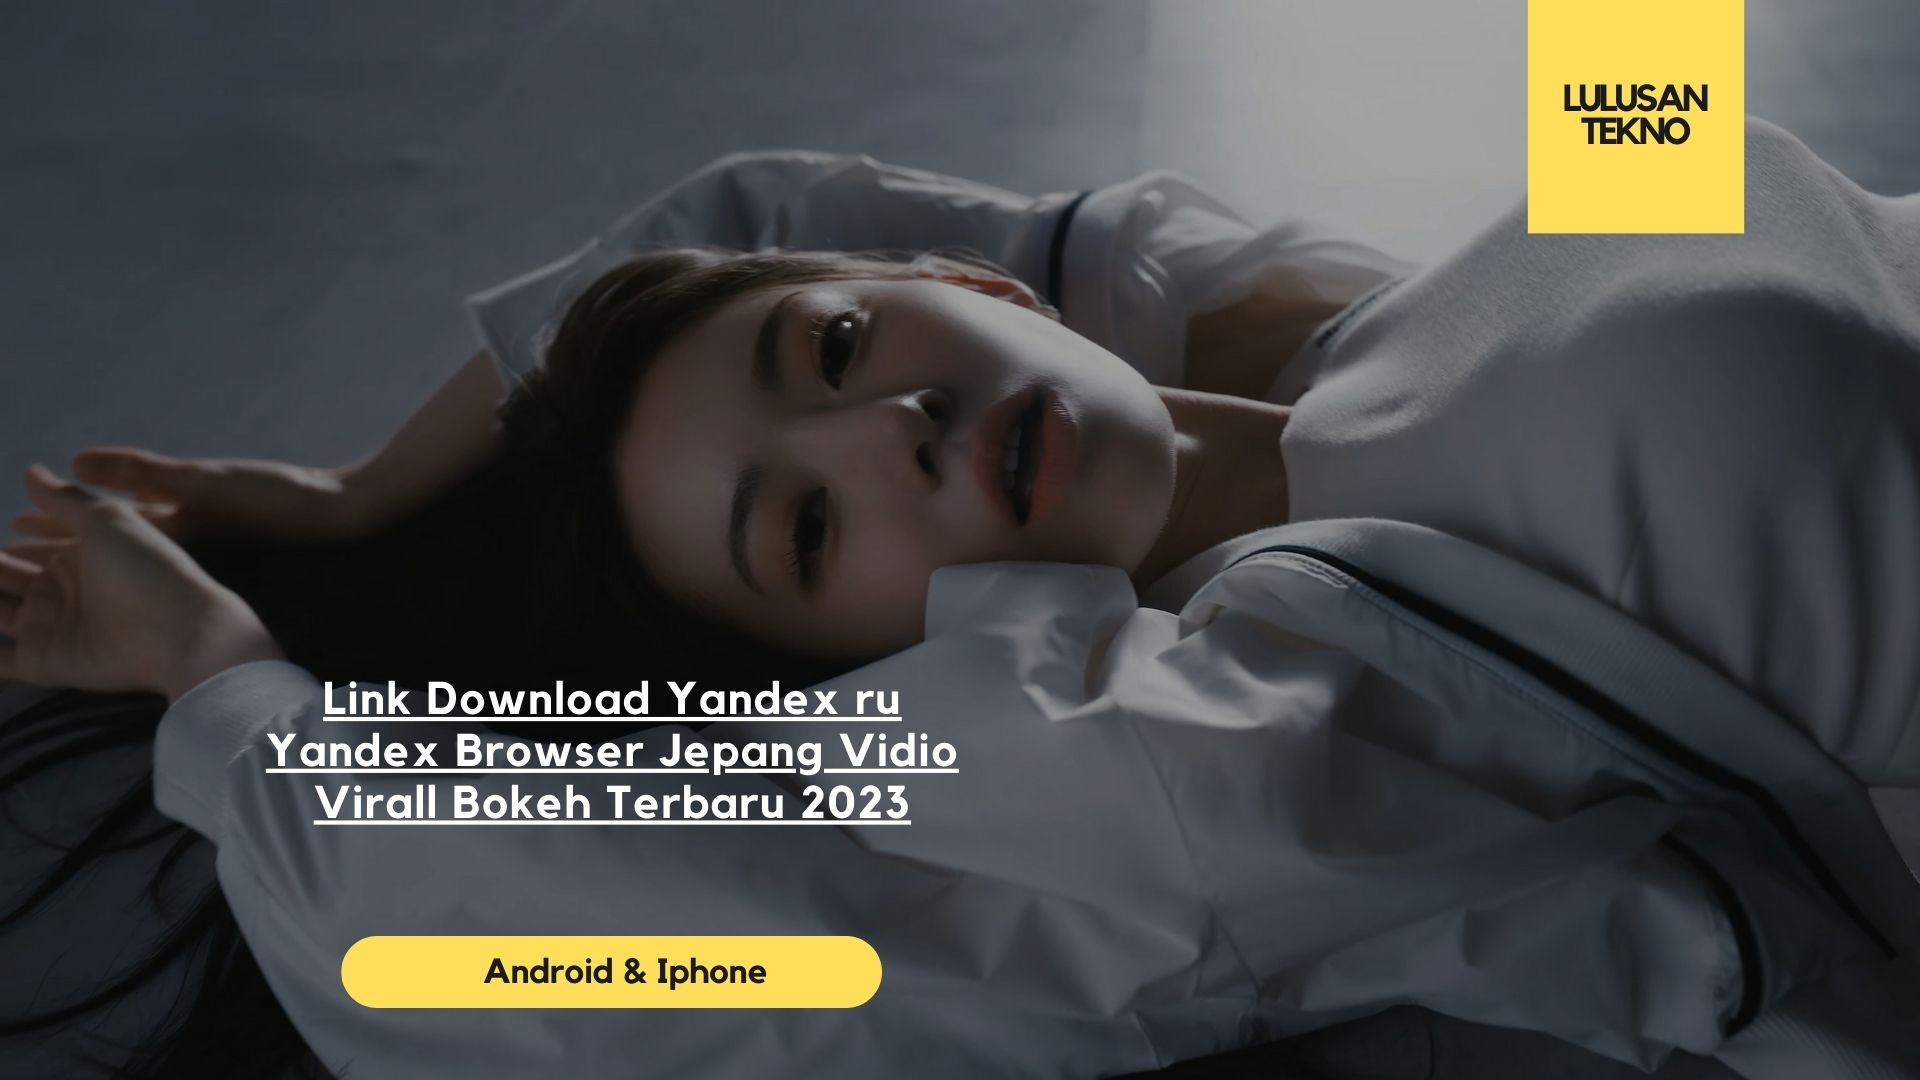 Link Download Yandex ru Yandex Browser Jepang Vidio Virall Bokeh Terbaru 2023